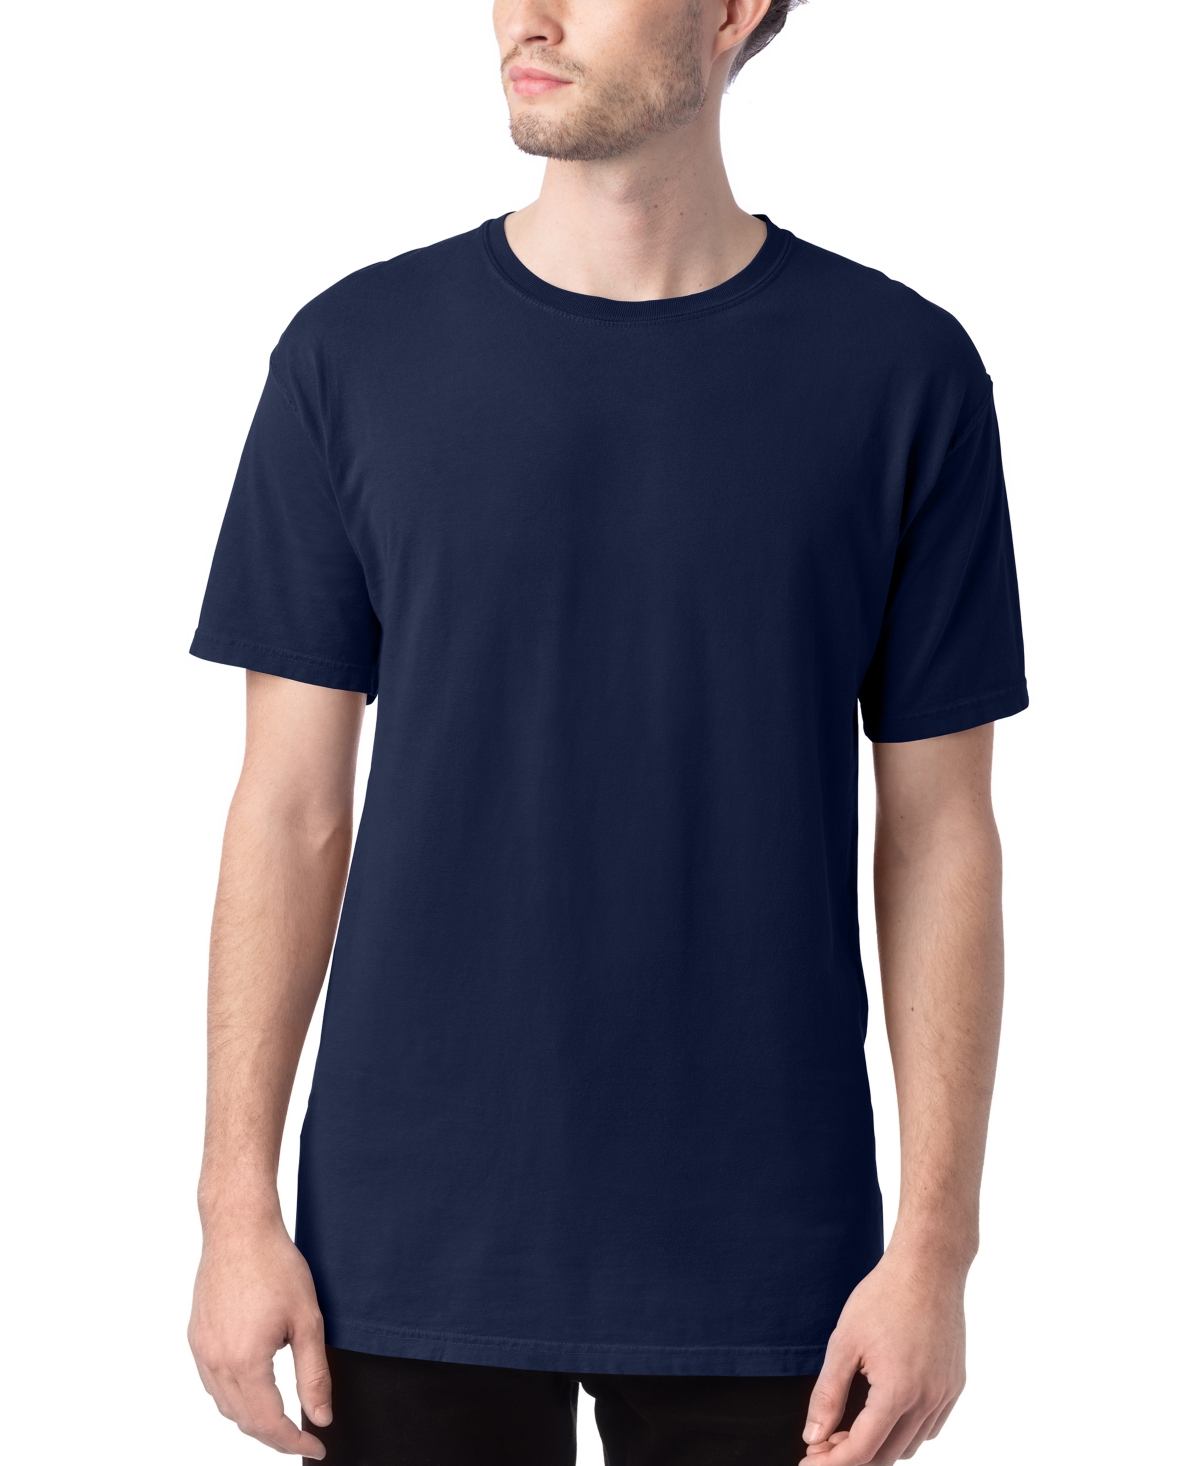 Unisex Garment Dyed Cotton T-Shirt - Blue